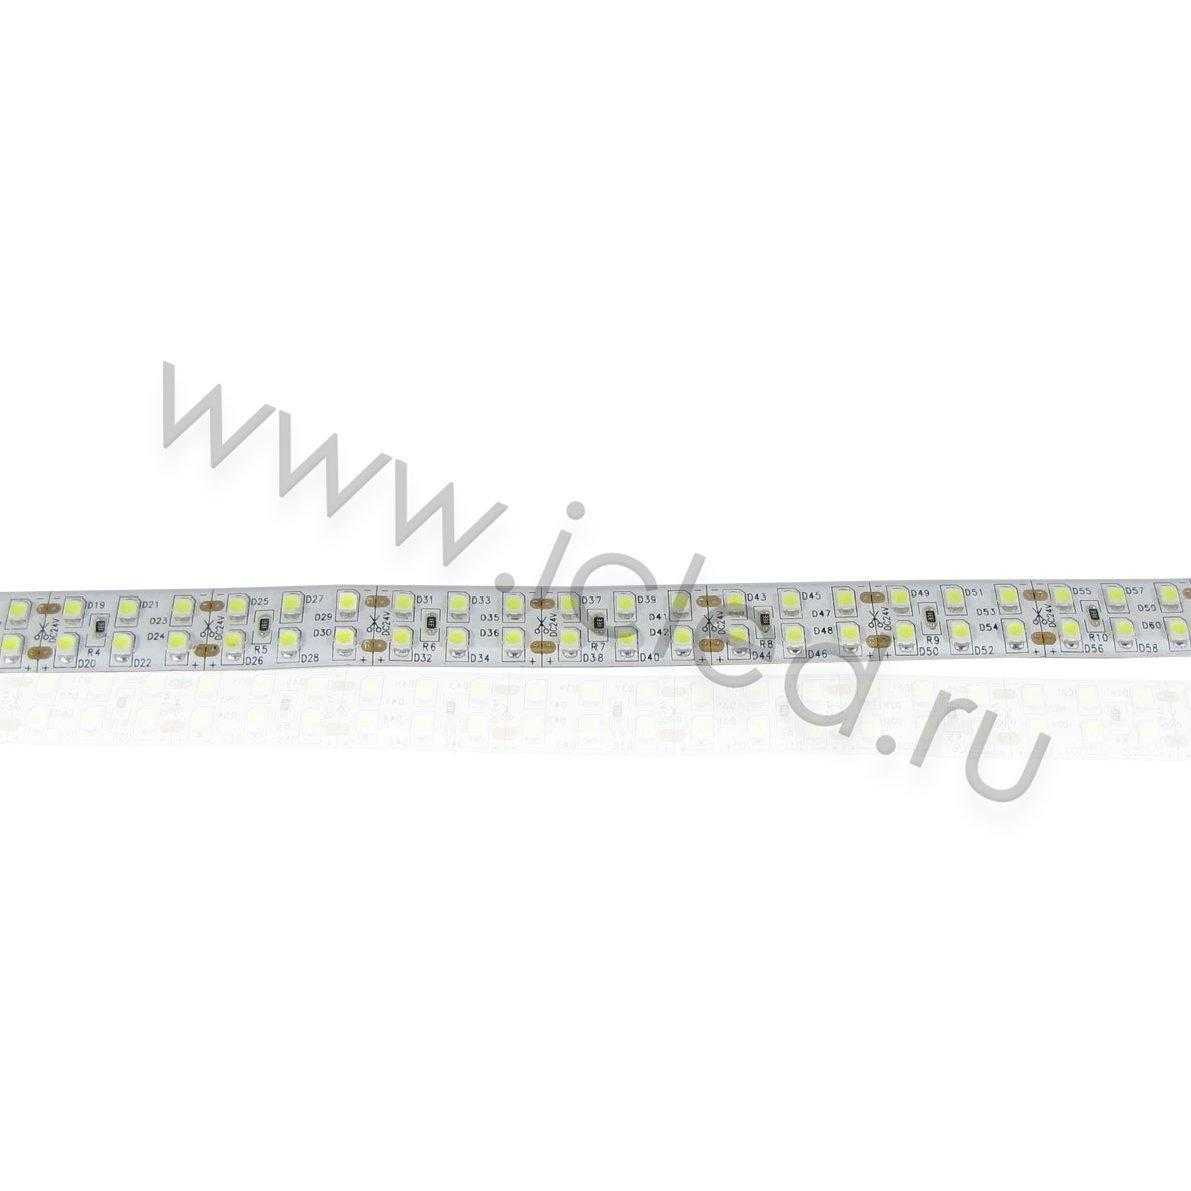 Влагозащищенные светодиодные ленты Светодиодная лента LUX class, 3528, 240 led/m, white, 24V, nano IP54 V241 Icled